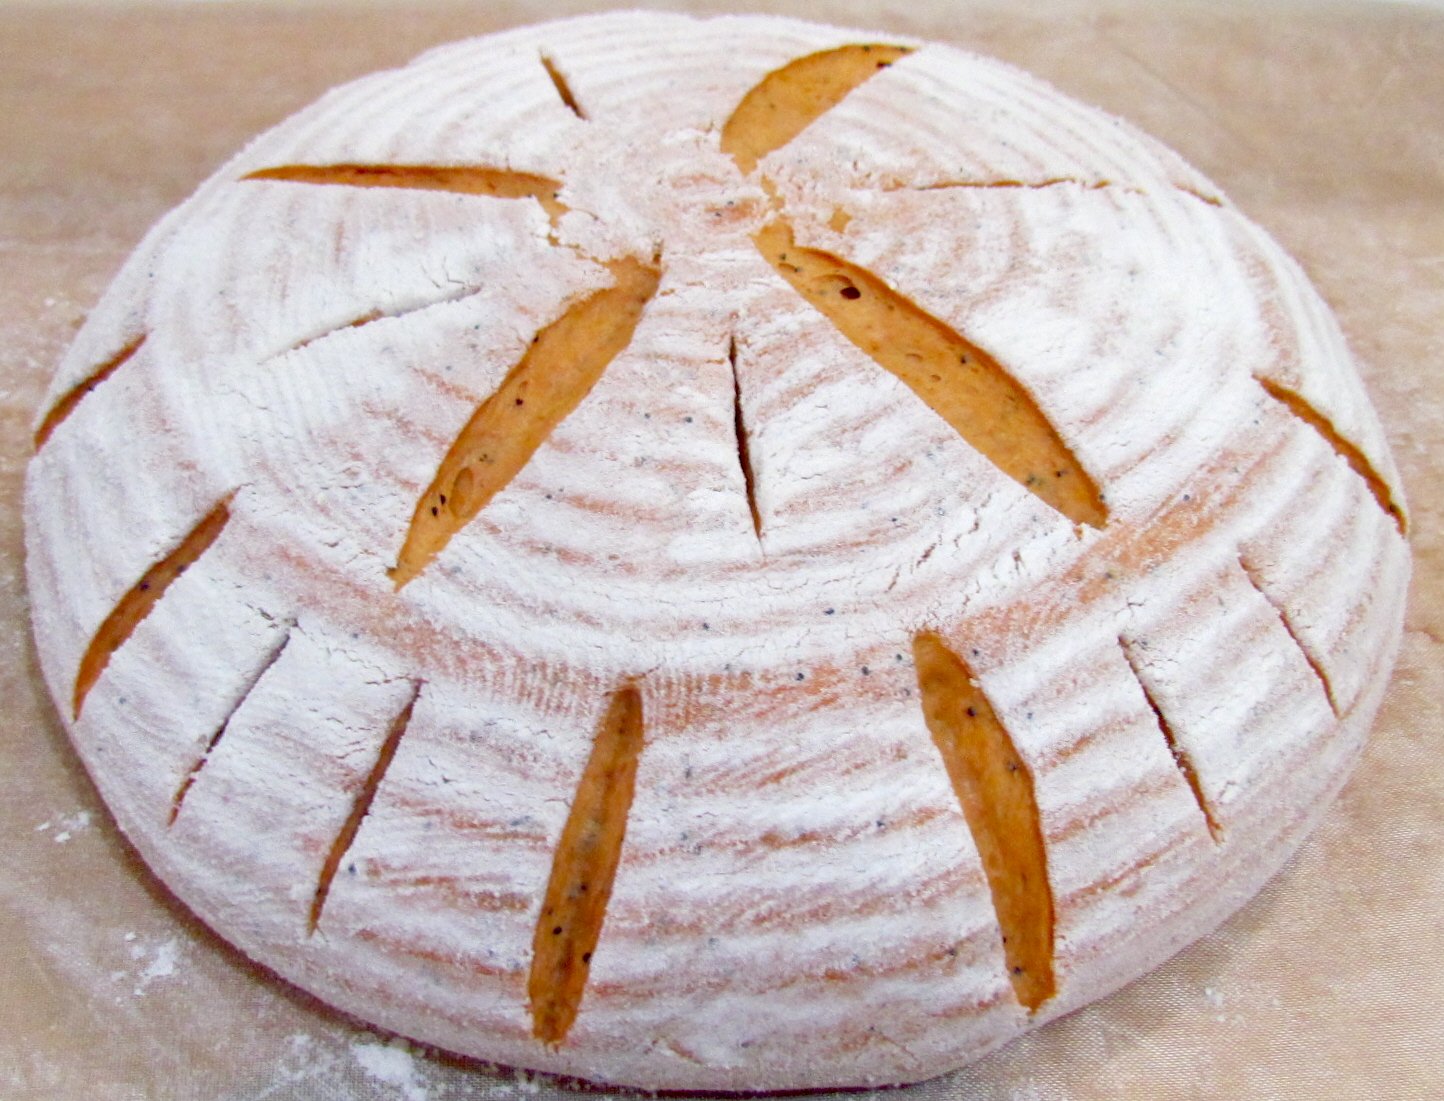 Pan de calabaza de masa madre al horno